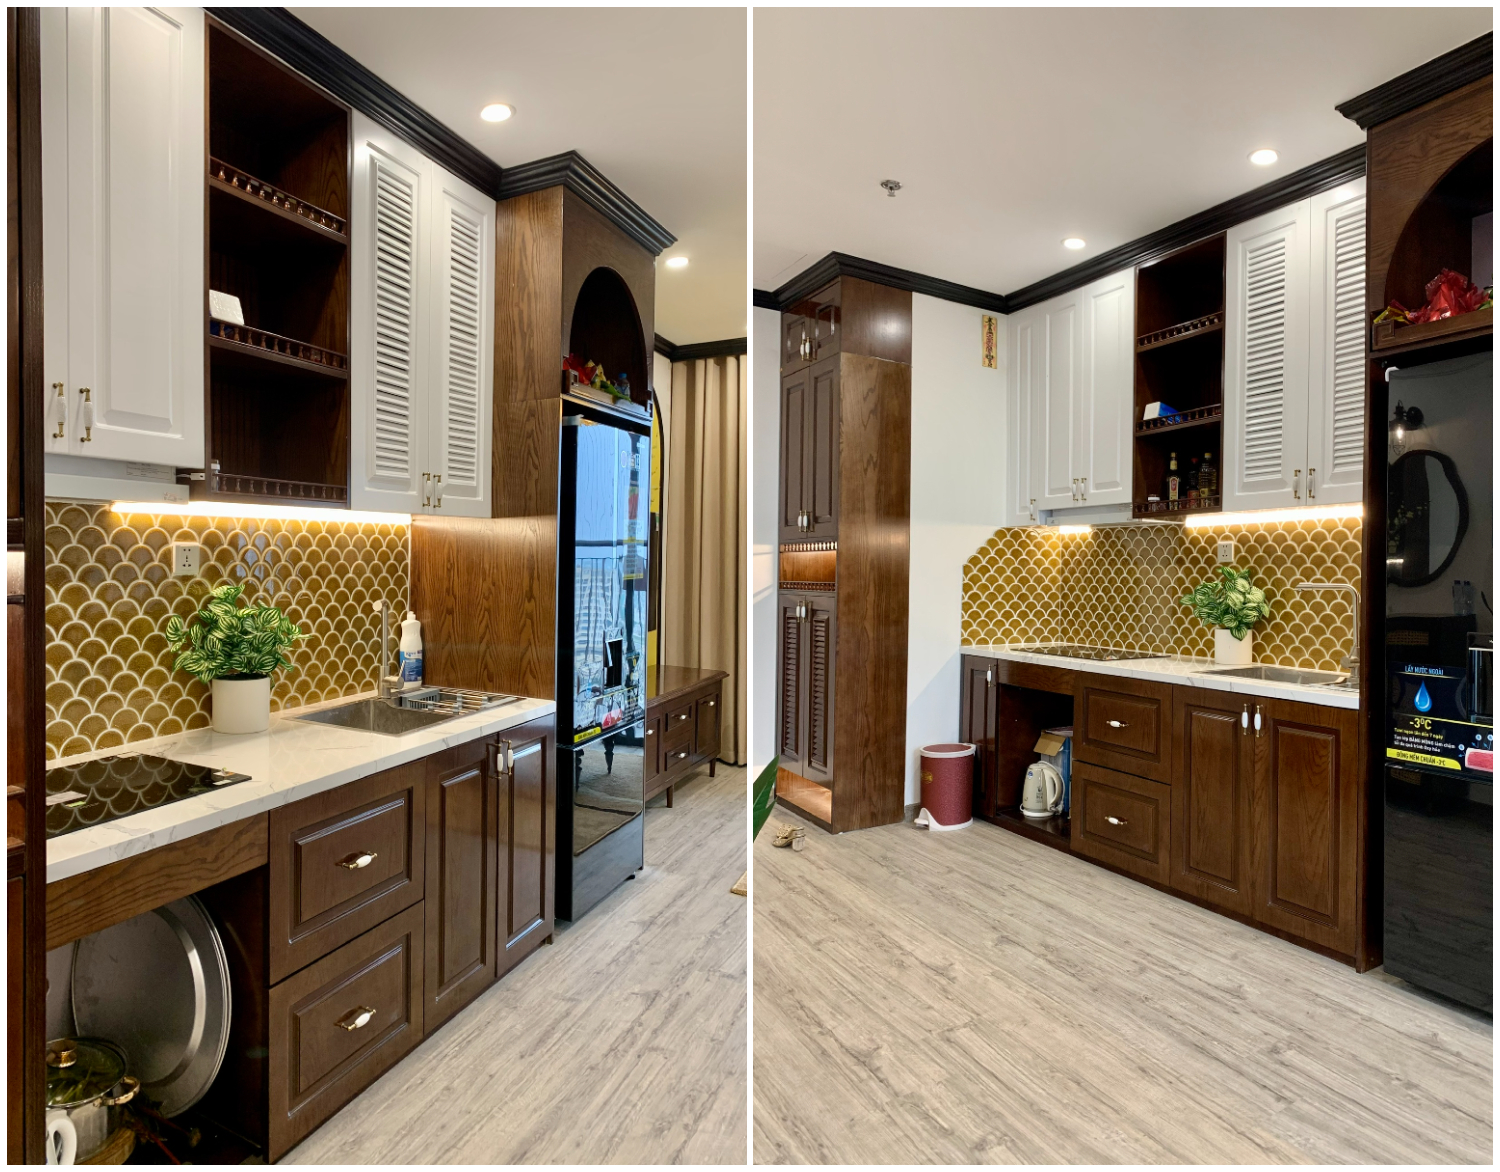 Không gian bếp được bố trí gọn gàng dọc theo mảng tường với hệ tủ bếp cao kịch trần sơn màu trắng tinh khôi. Thiết kế này vừa cung cấp chỗ trữ đồ rộng rãi, vừa tạo độ thoáng.